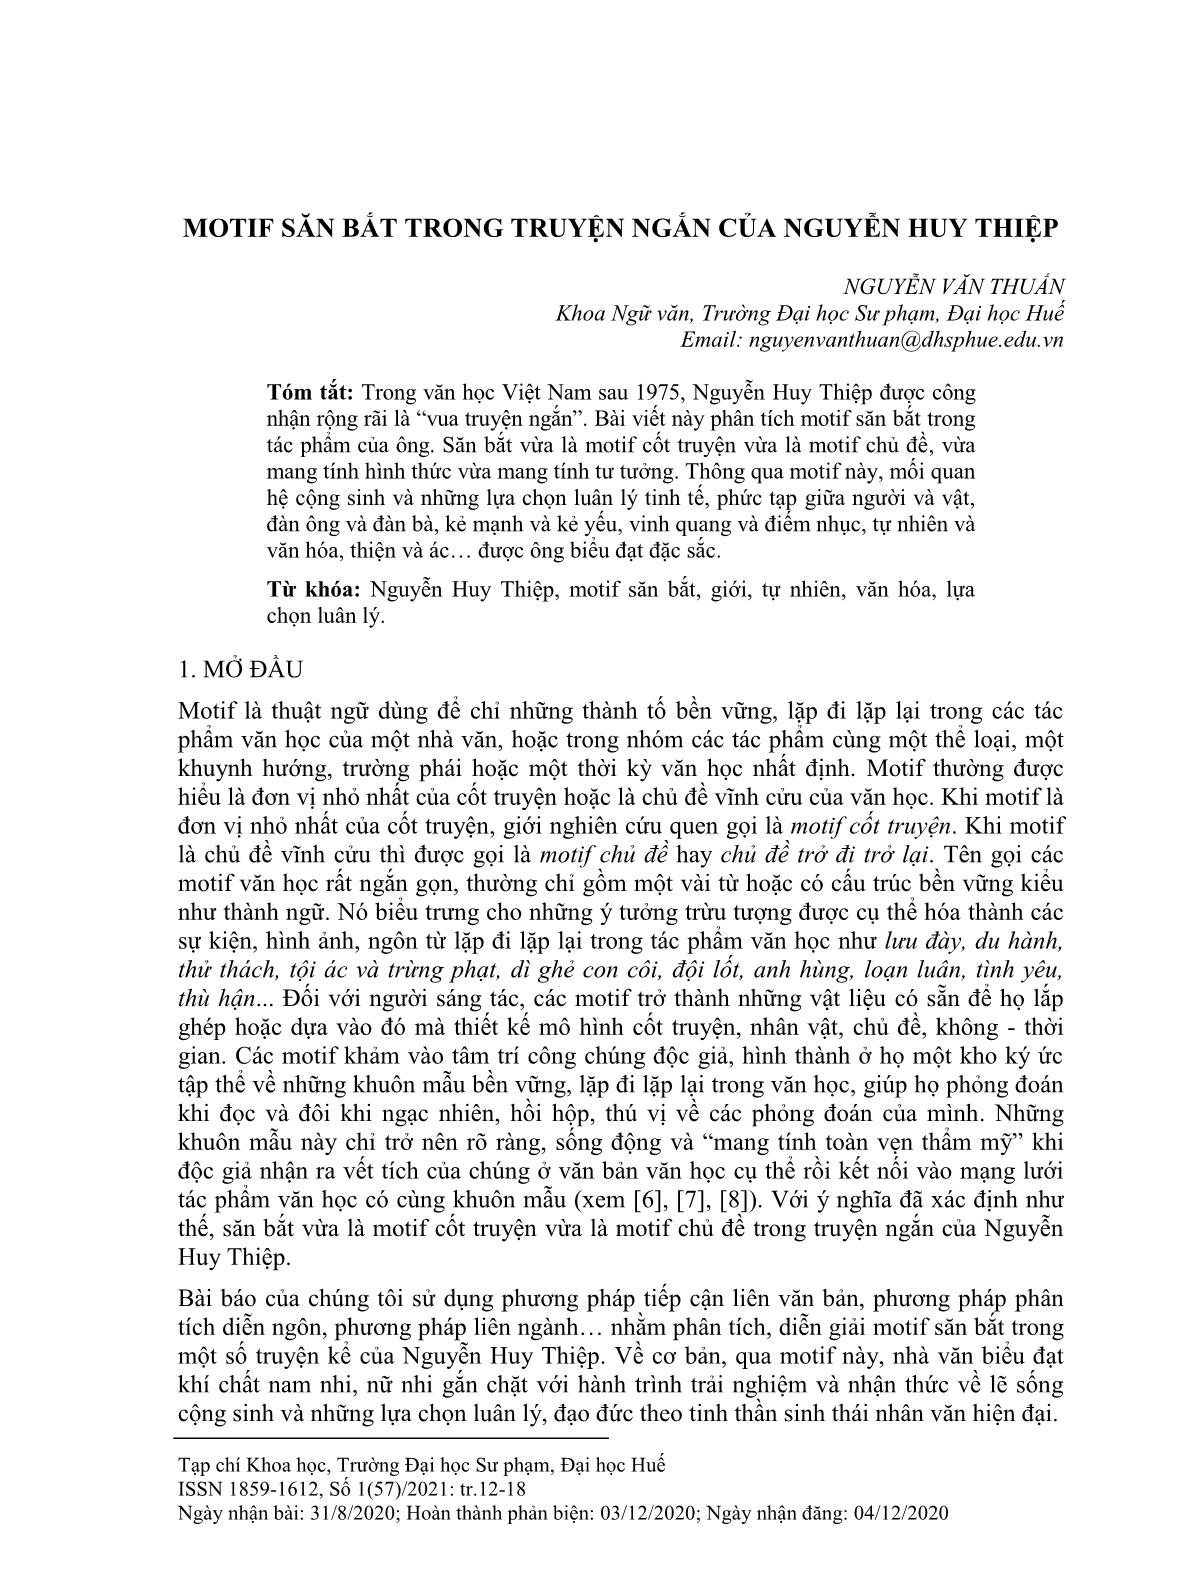 Motif săn bắt trong truyện ngắn của Nguyễn Huy Thiệp trang 1